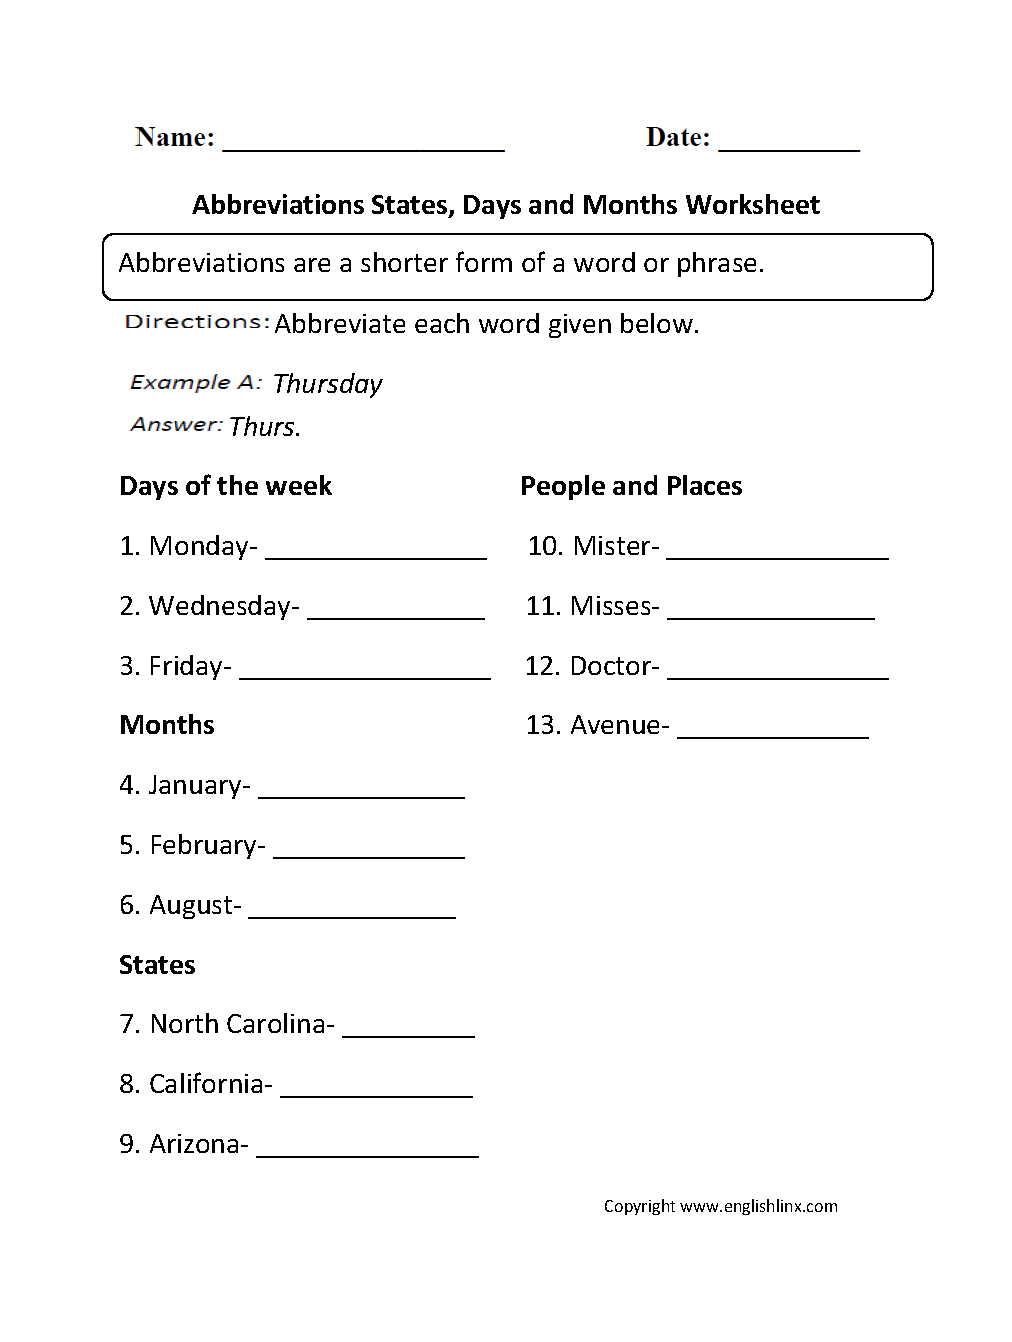 englishlinx-abbreviations-worksheets